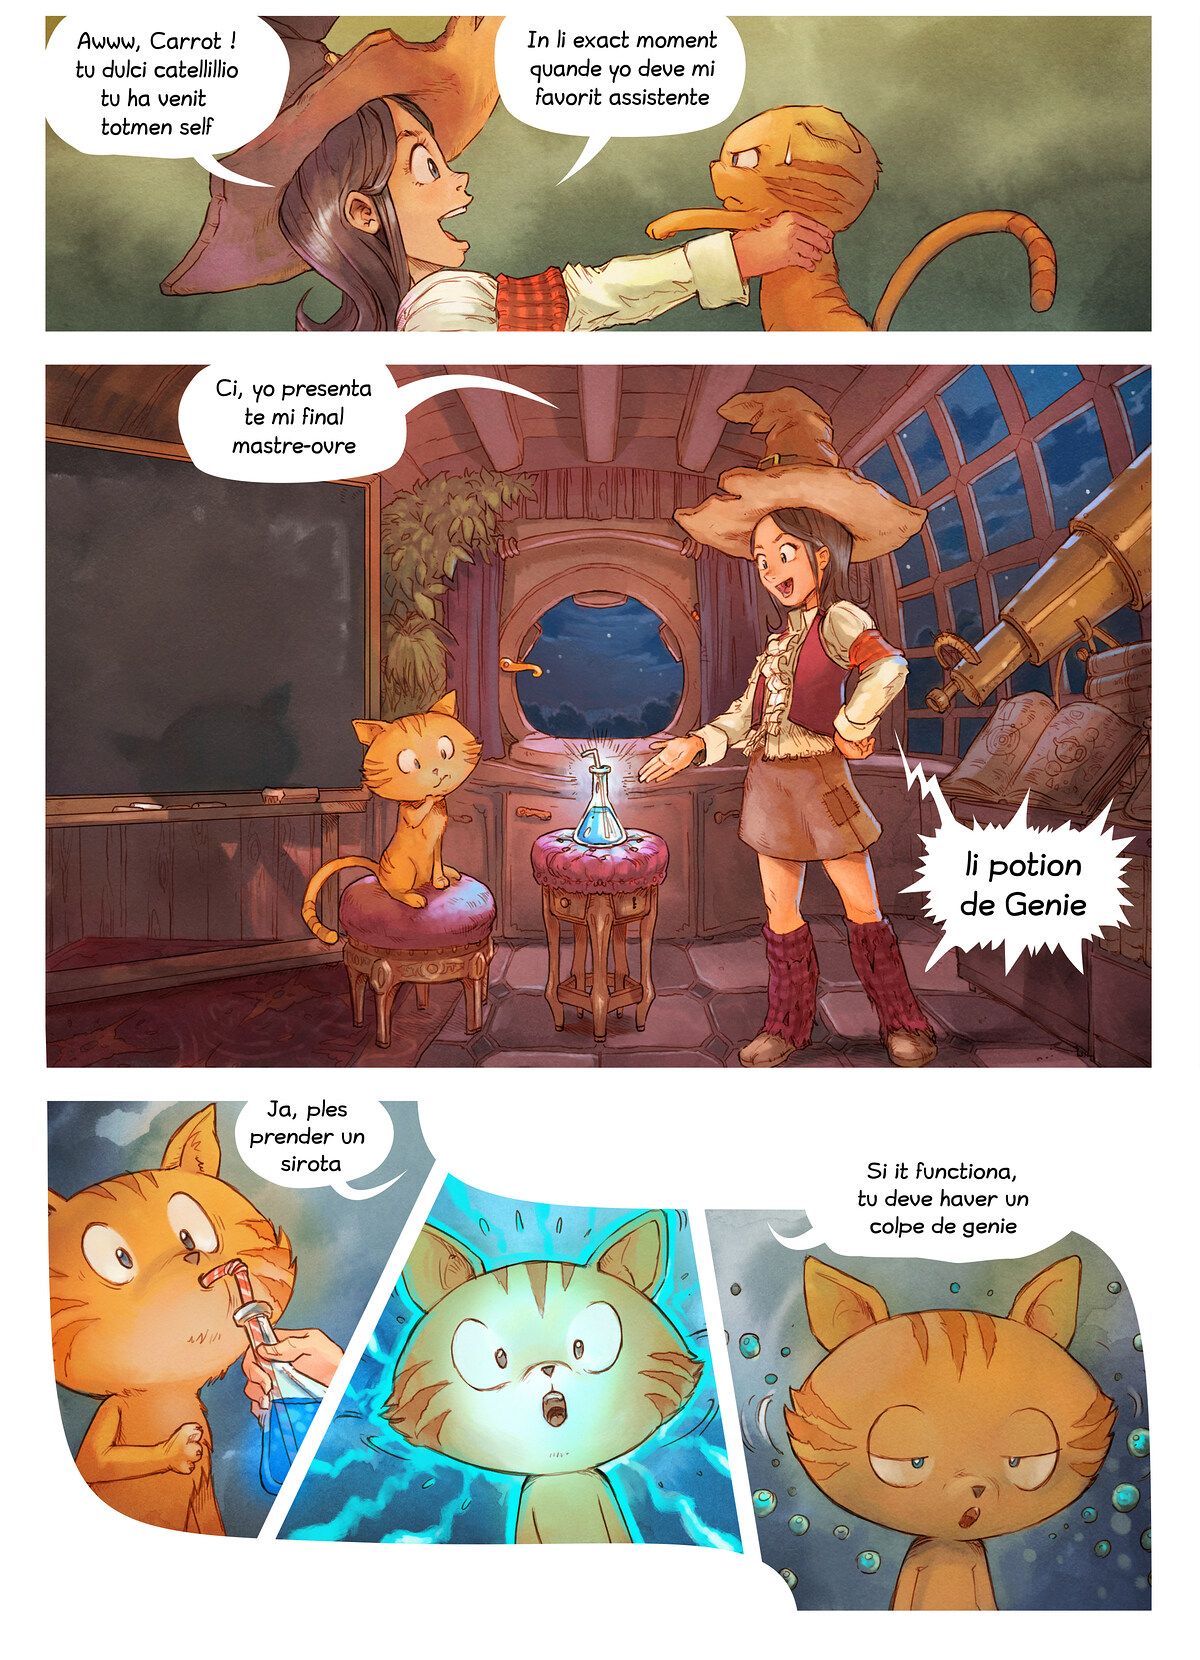 Episode 4: Colpe de Genie, Page 3